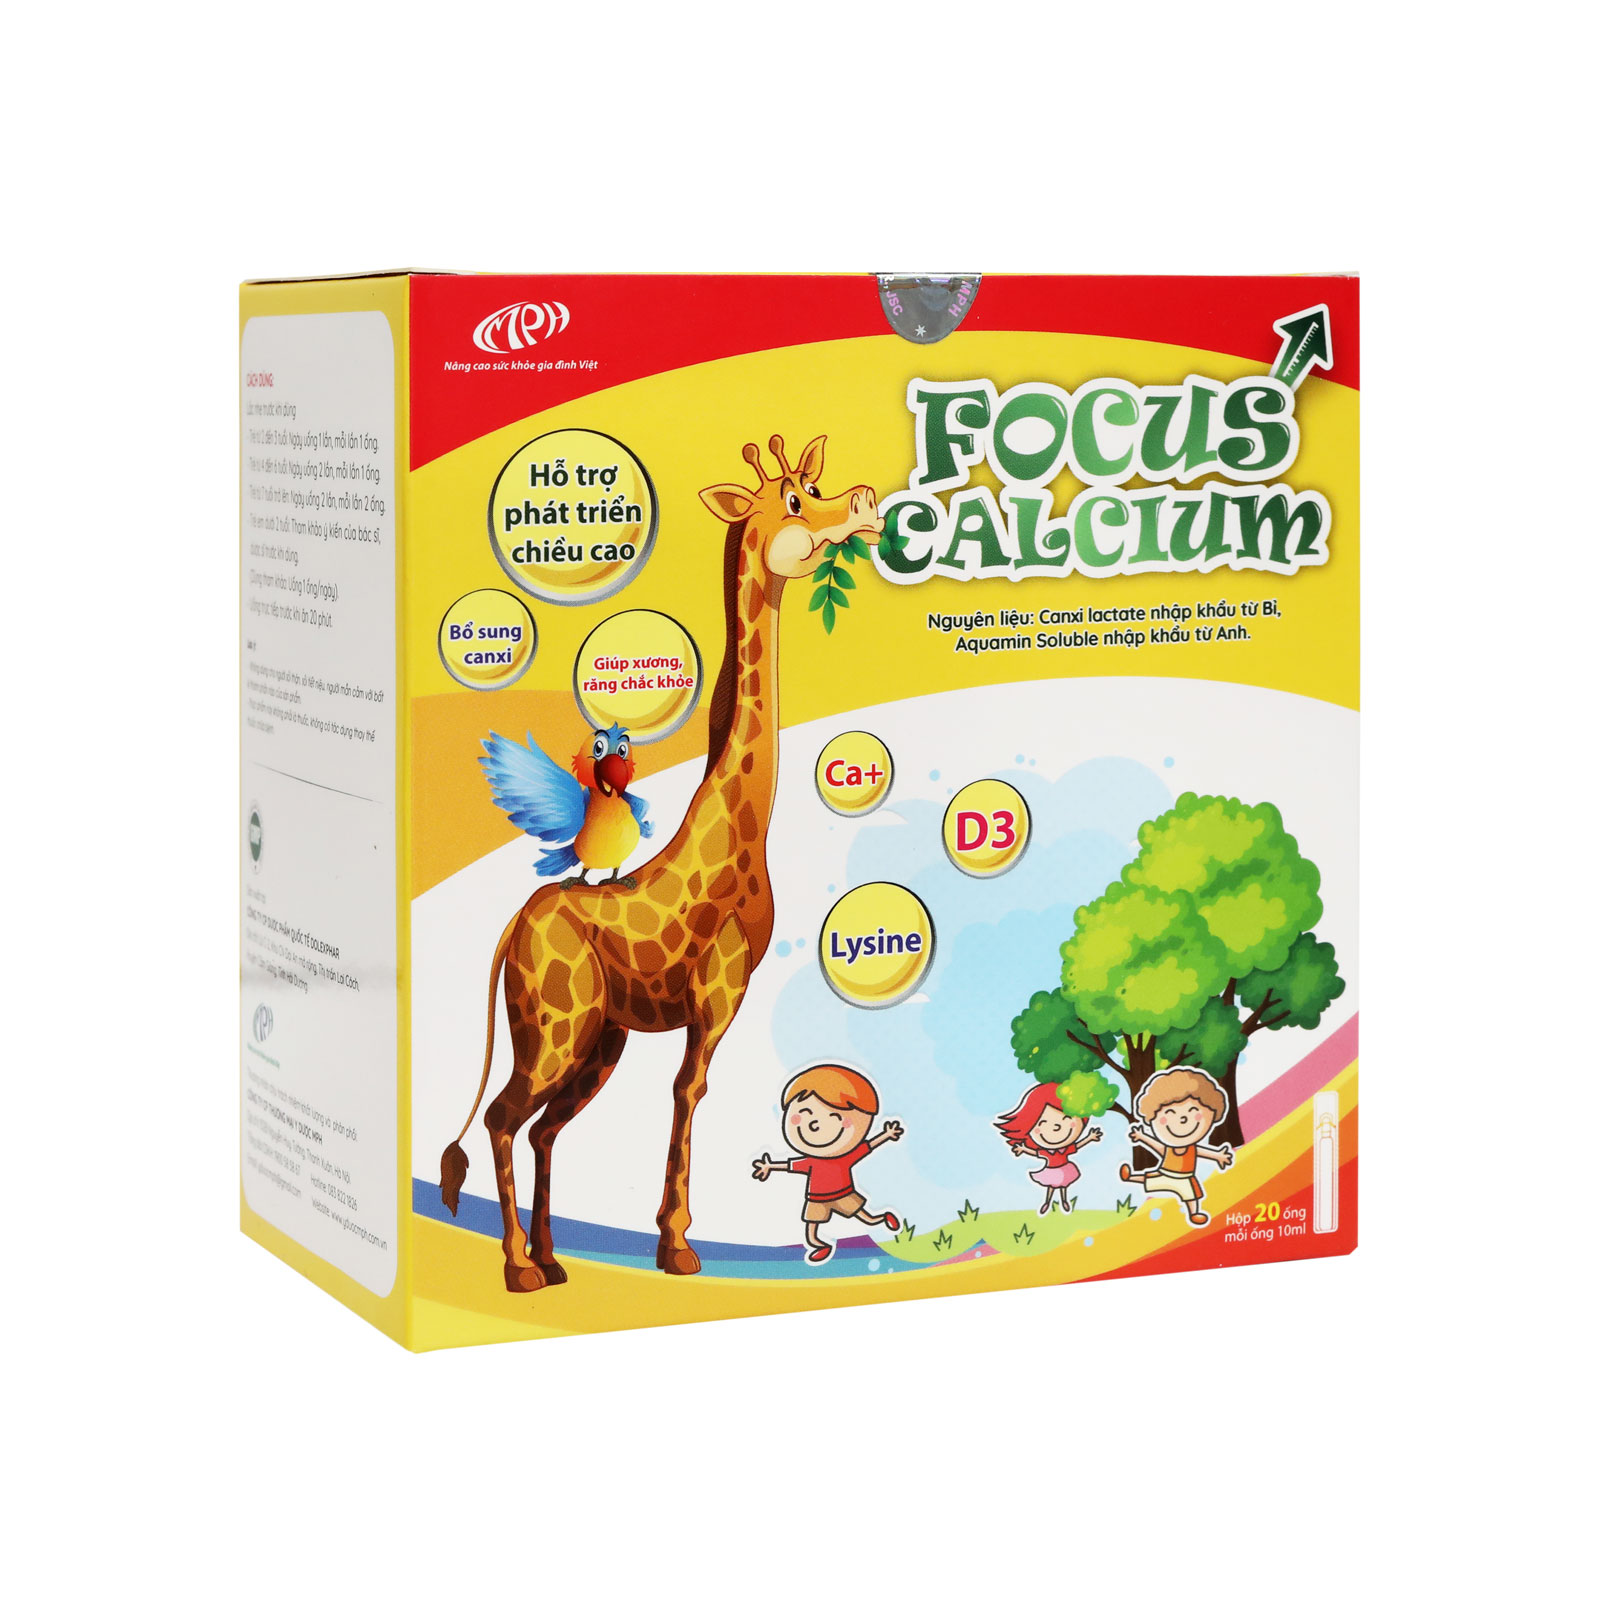 Canxi cho trẻ Focus Calcium - Canxi cho bé dạng nước bổ sung canxi từ tảo biển, vitamin D3 giúp hấp thu   canxi dễ dàng - Hộp 20 ống